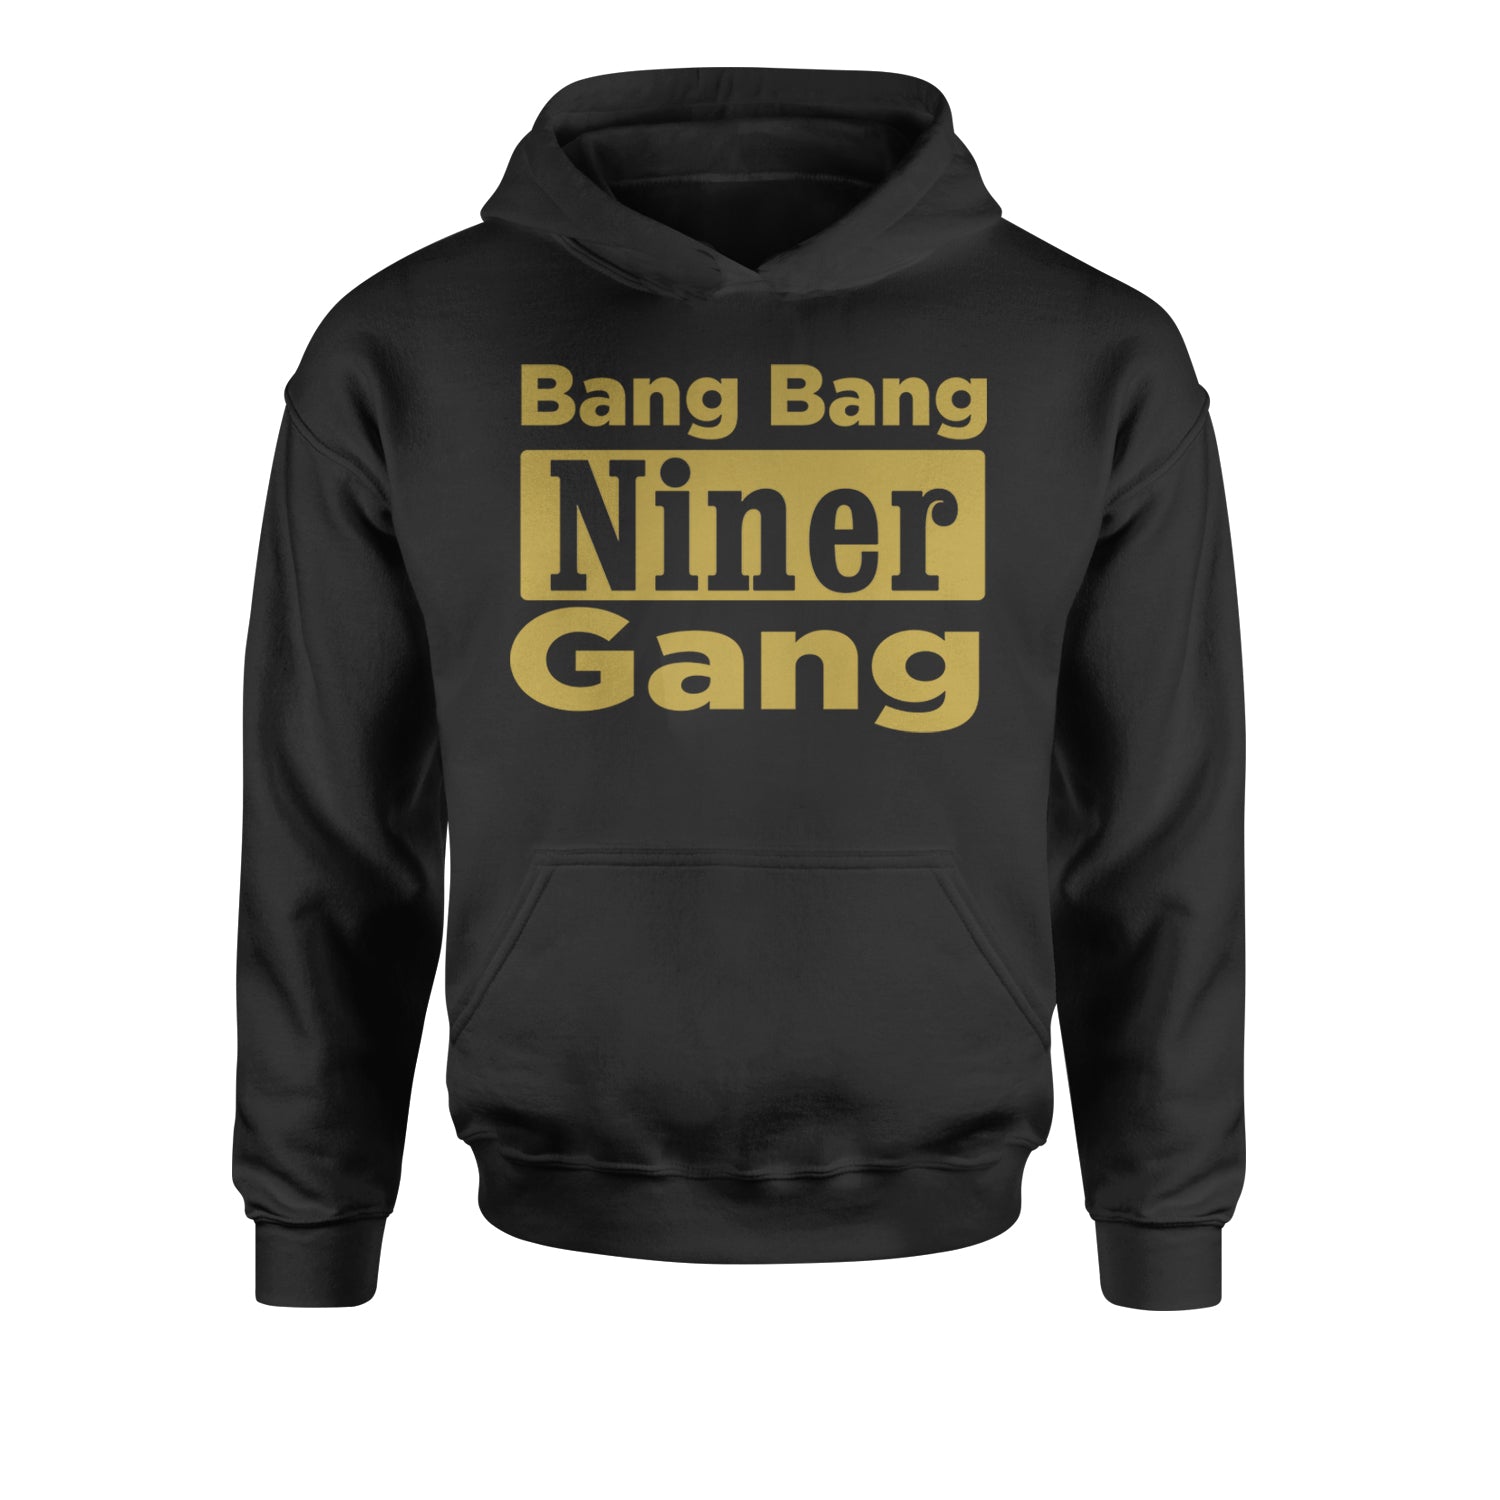 Bang Bang Niner Gang San Francisco Youth-Sized Hoodie